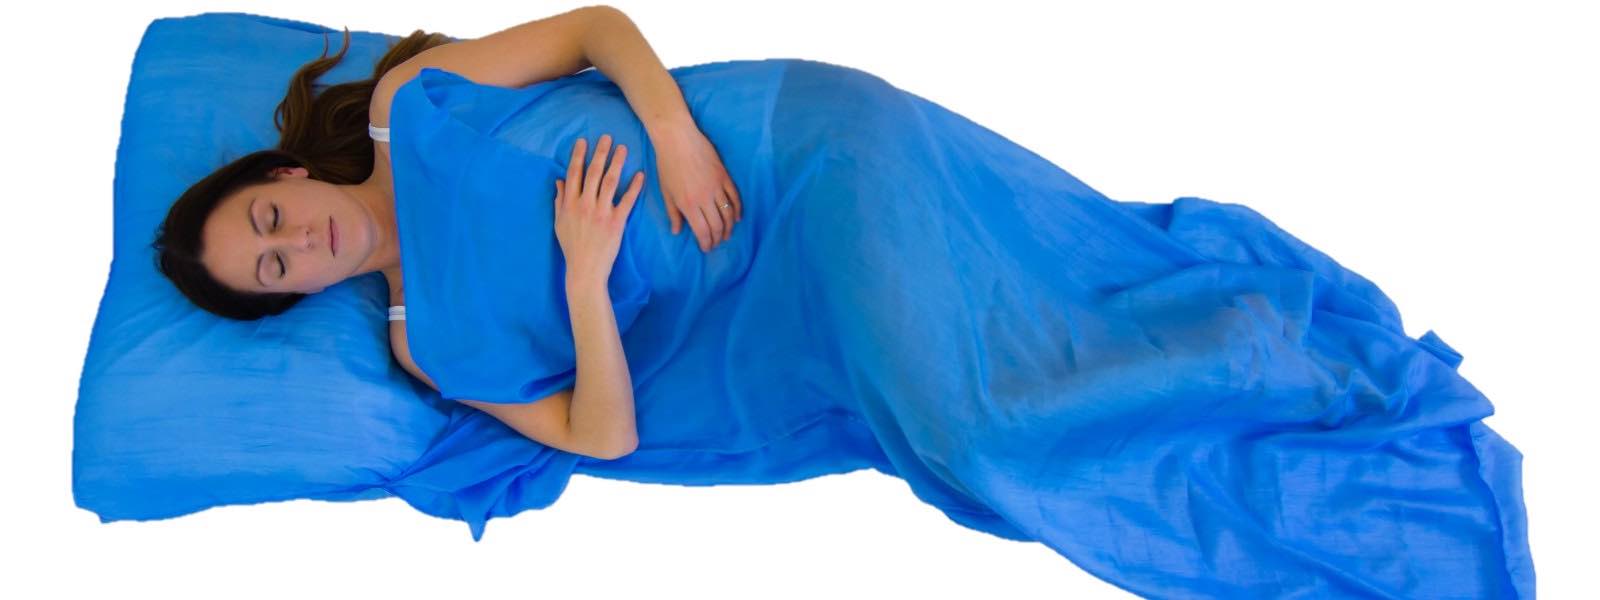 silk sleeping bag